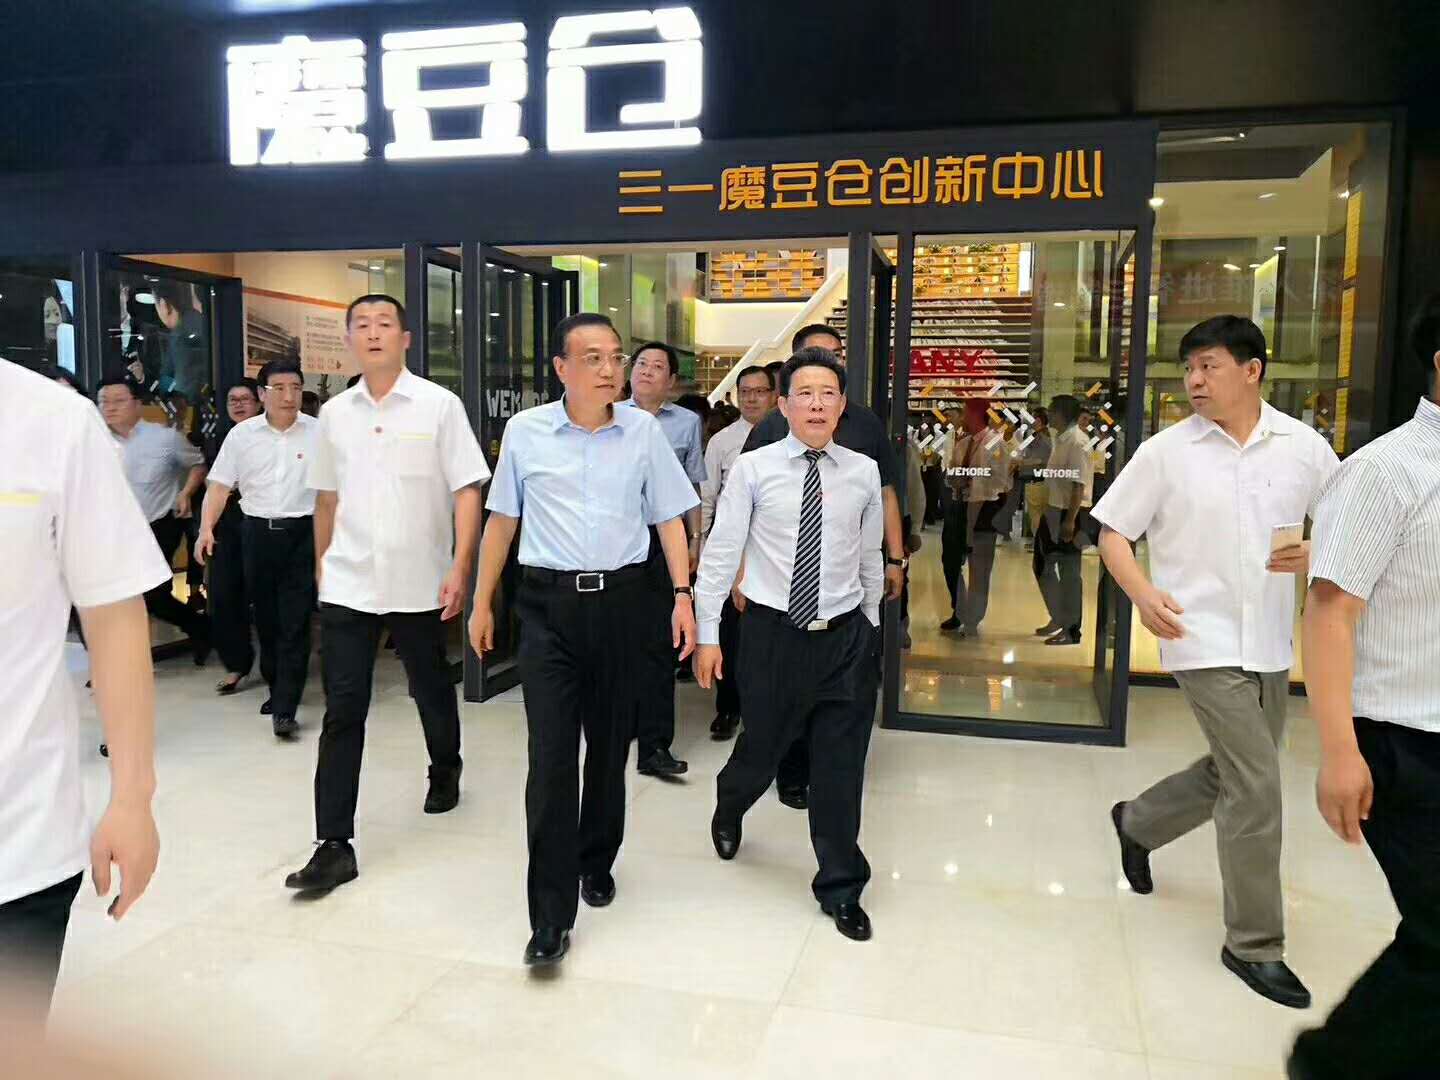 따뜻하게 총리를 환영합니다. Keqiang Lee의 CSCERAMIC 사옥 방문.